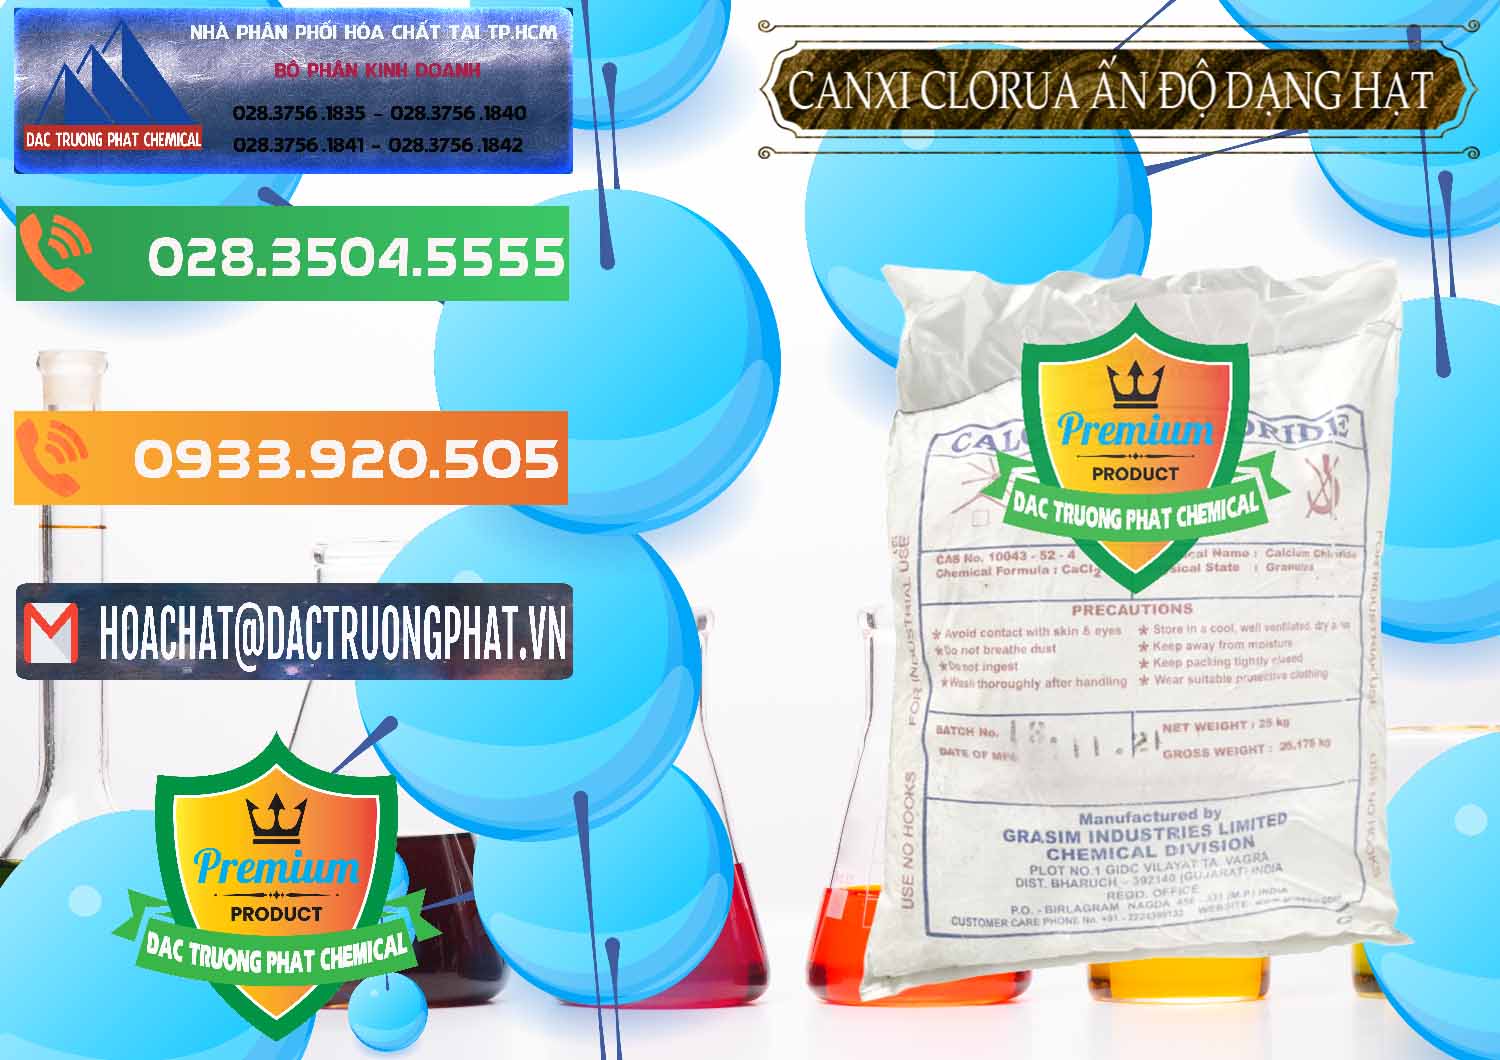 Chuyên phân phối ( bán ) CaCl2 – Canxi Clorua Dạng Hạt Aditya Birla Grasim Ấn Độ India - 0418 - Nơi phân phối & cung cấp hóa chất tại TP.HCM - hoachatxulynuoc.com.vn